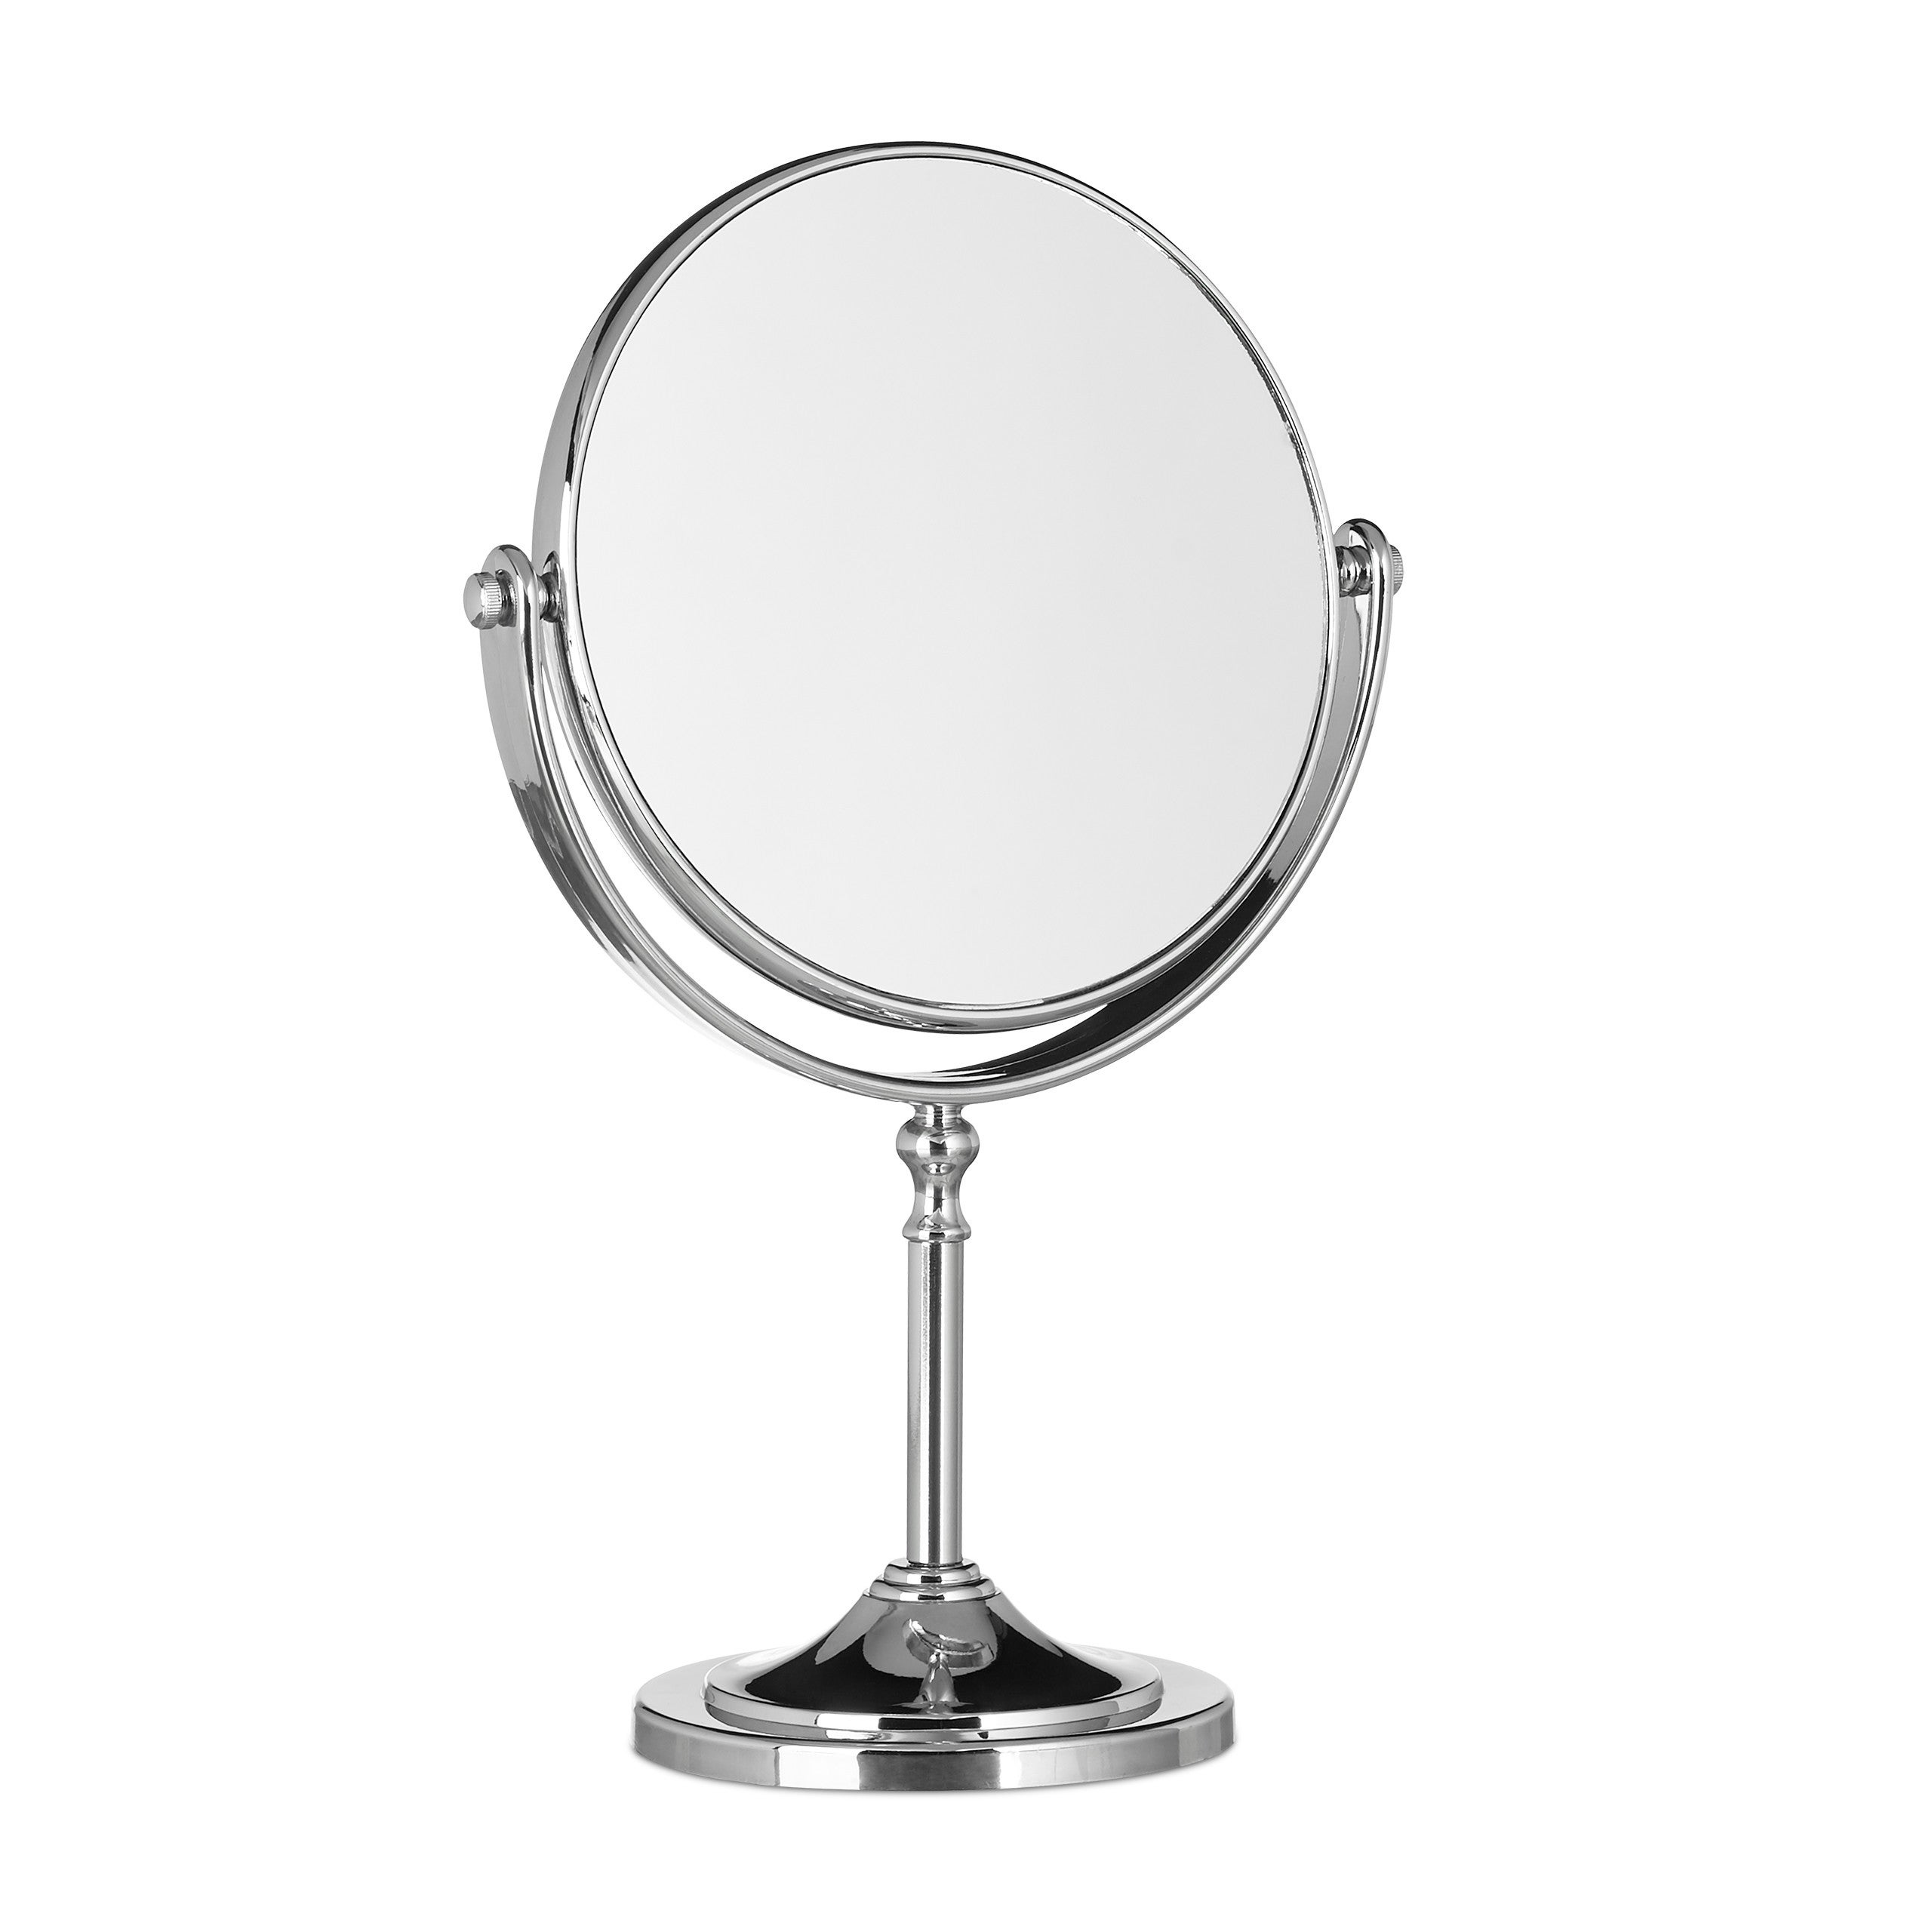 GXMGYT Specchio per Trucco a LED Specchio per toeletta da Tavolo dormitorio Touch Specchio Girevole per Trucco Lampada Due in Uno @ A Rosa 